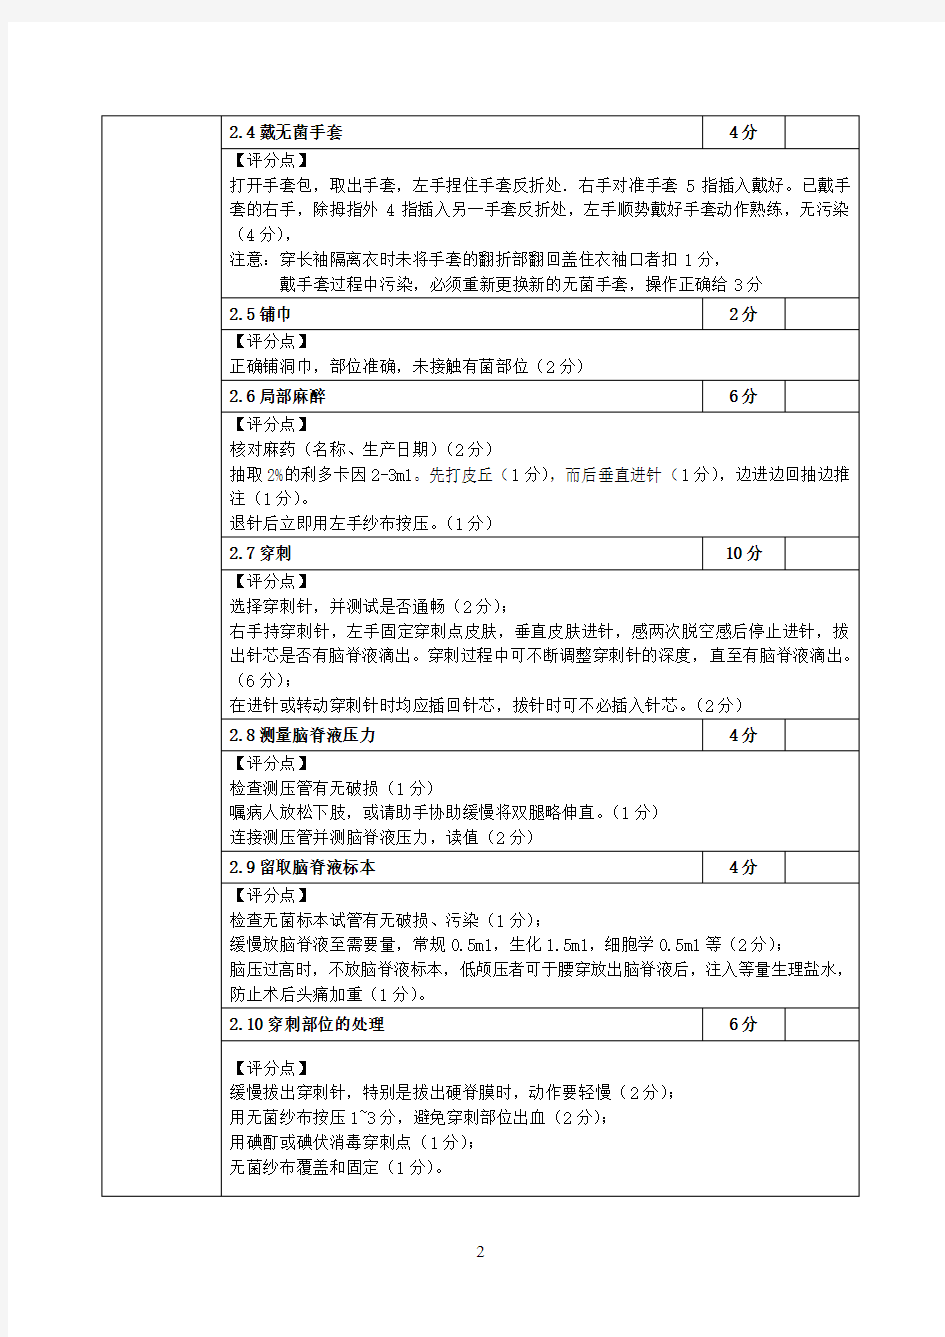 6.滨州医学院附属医院实习医师腰椎穿刺术评分表